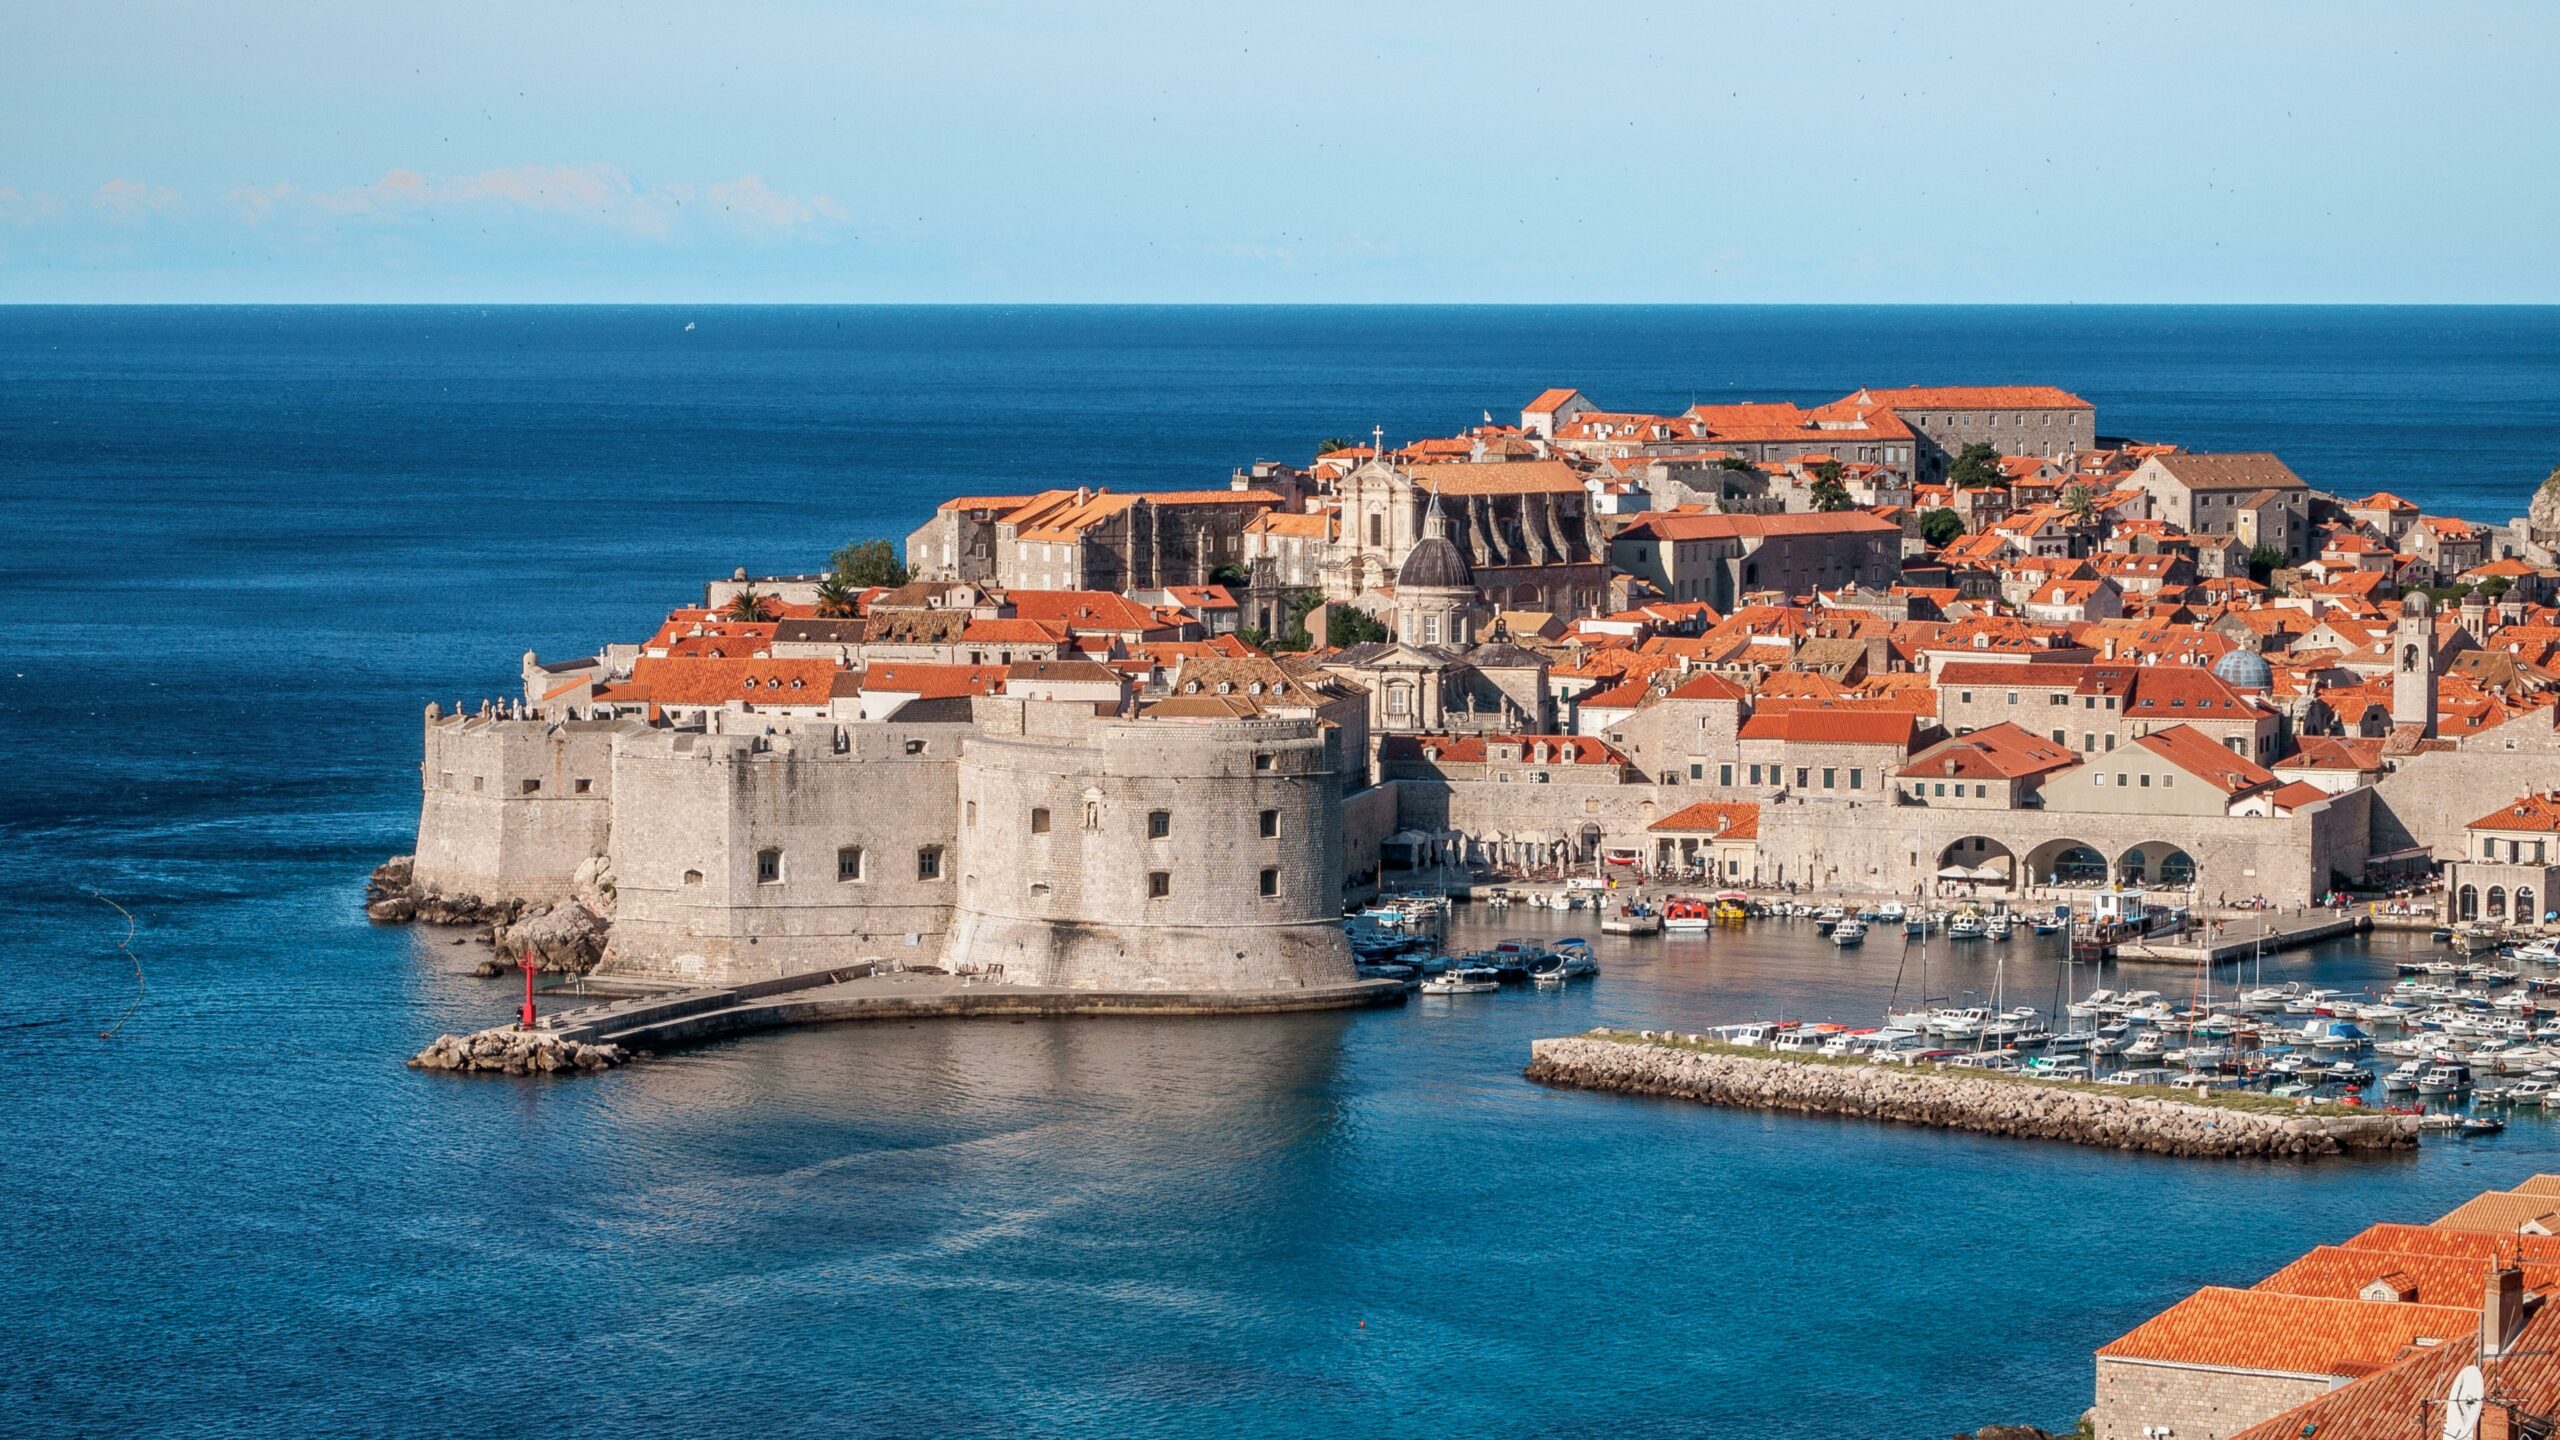 Marina in Dubrovnik